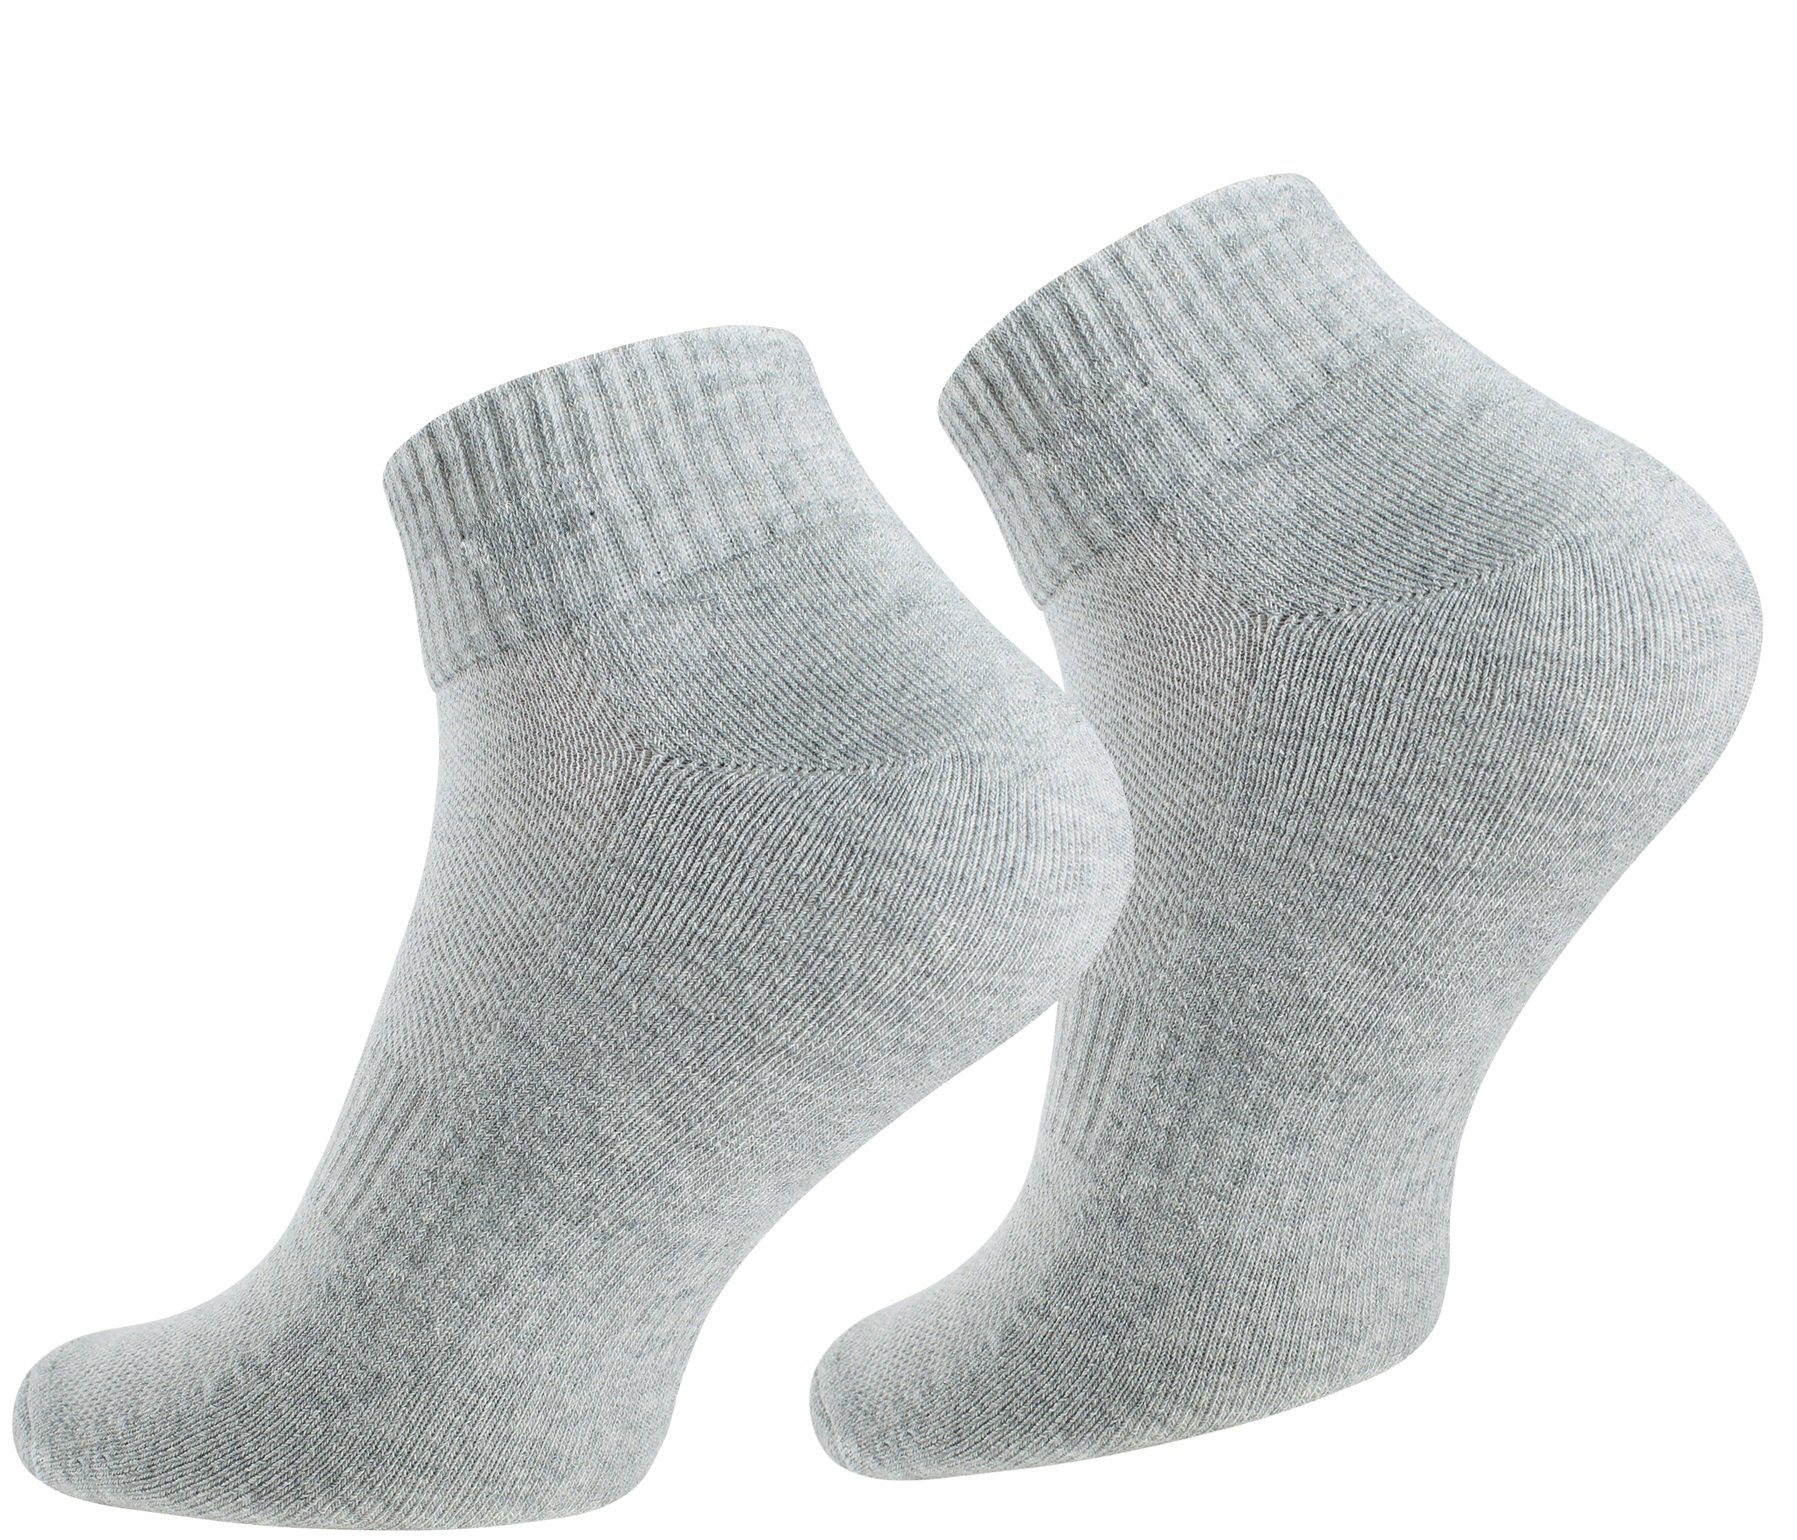 und mit Sportsocken 6 Soul® Mesh-Strick Socken-Sportsocken Paar Grau Frotteesole Stark Quarter